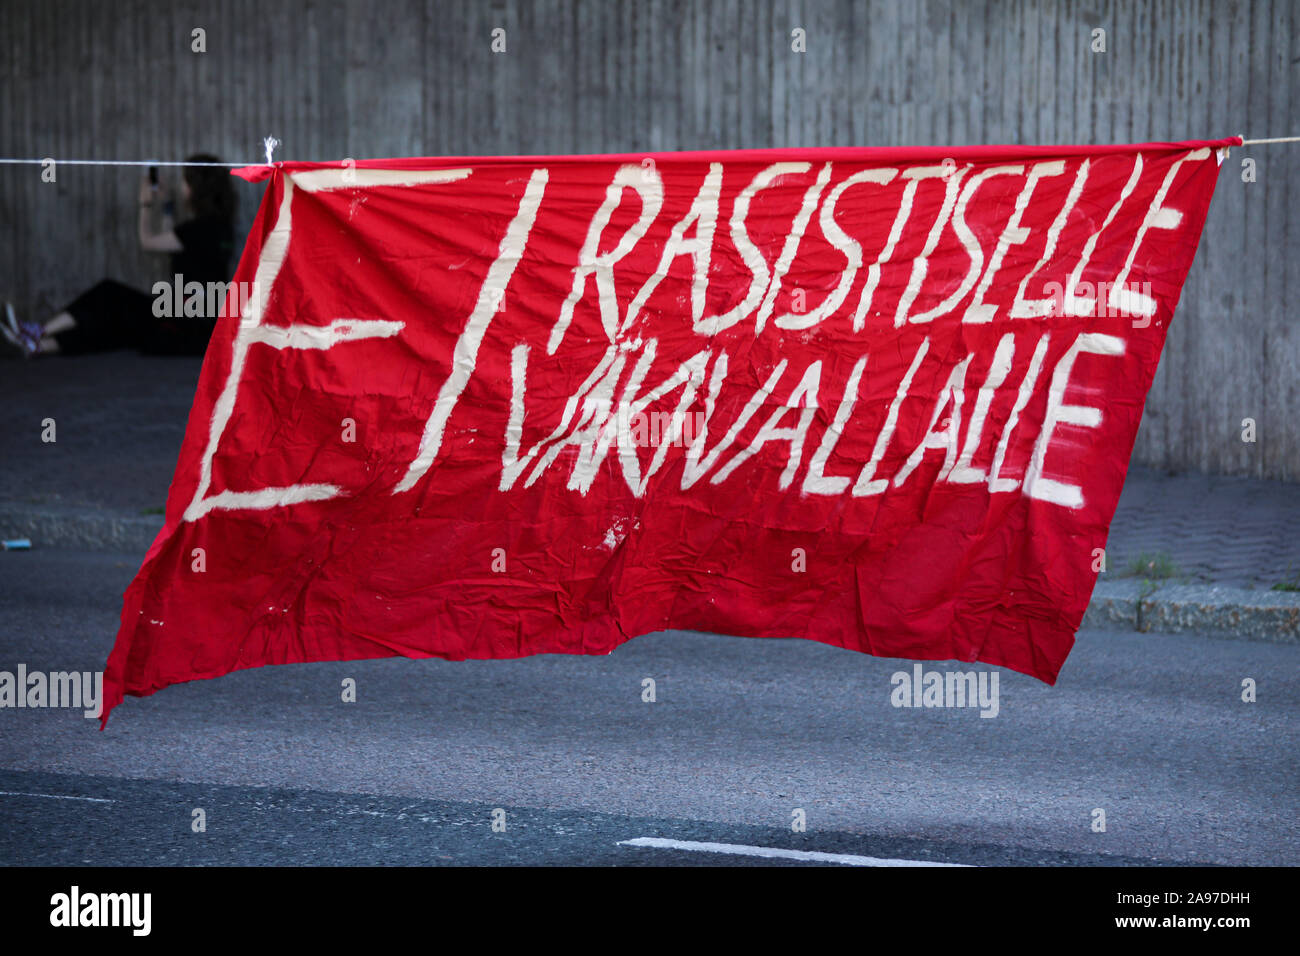 Ei rasistiselle väkivallalle - keine rassistischen Gewalt-Fahne an Katu auf Punk 2019 Reclaim-the-Streets in Helsinki, Finnland, Stockfoto